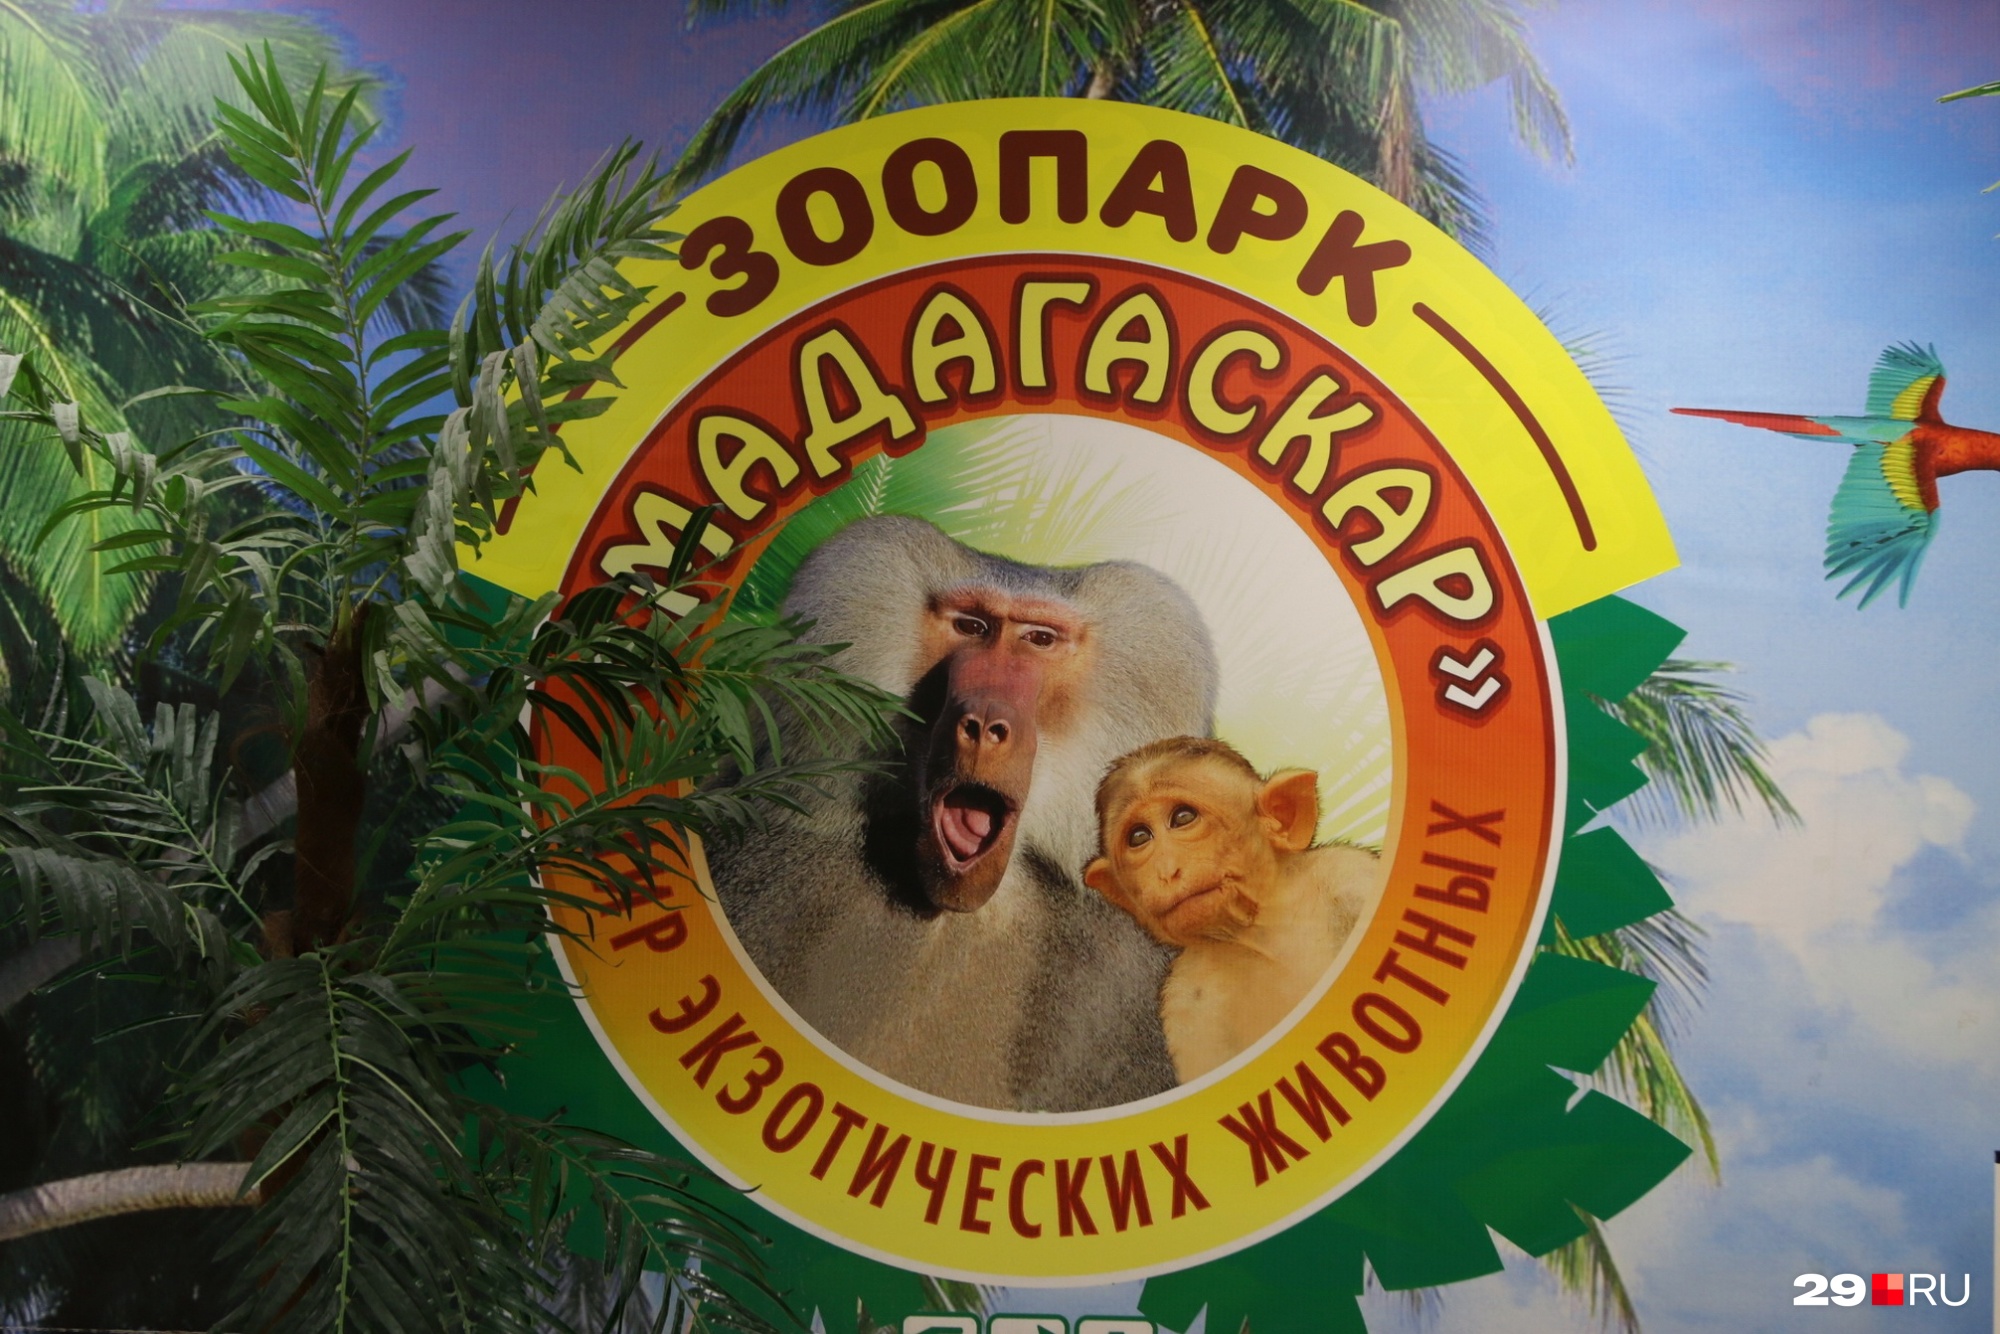 Контактный зоопарк находится в одном из торговых центров 